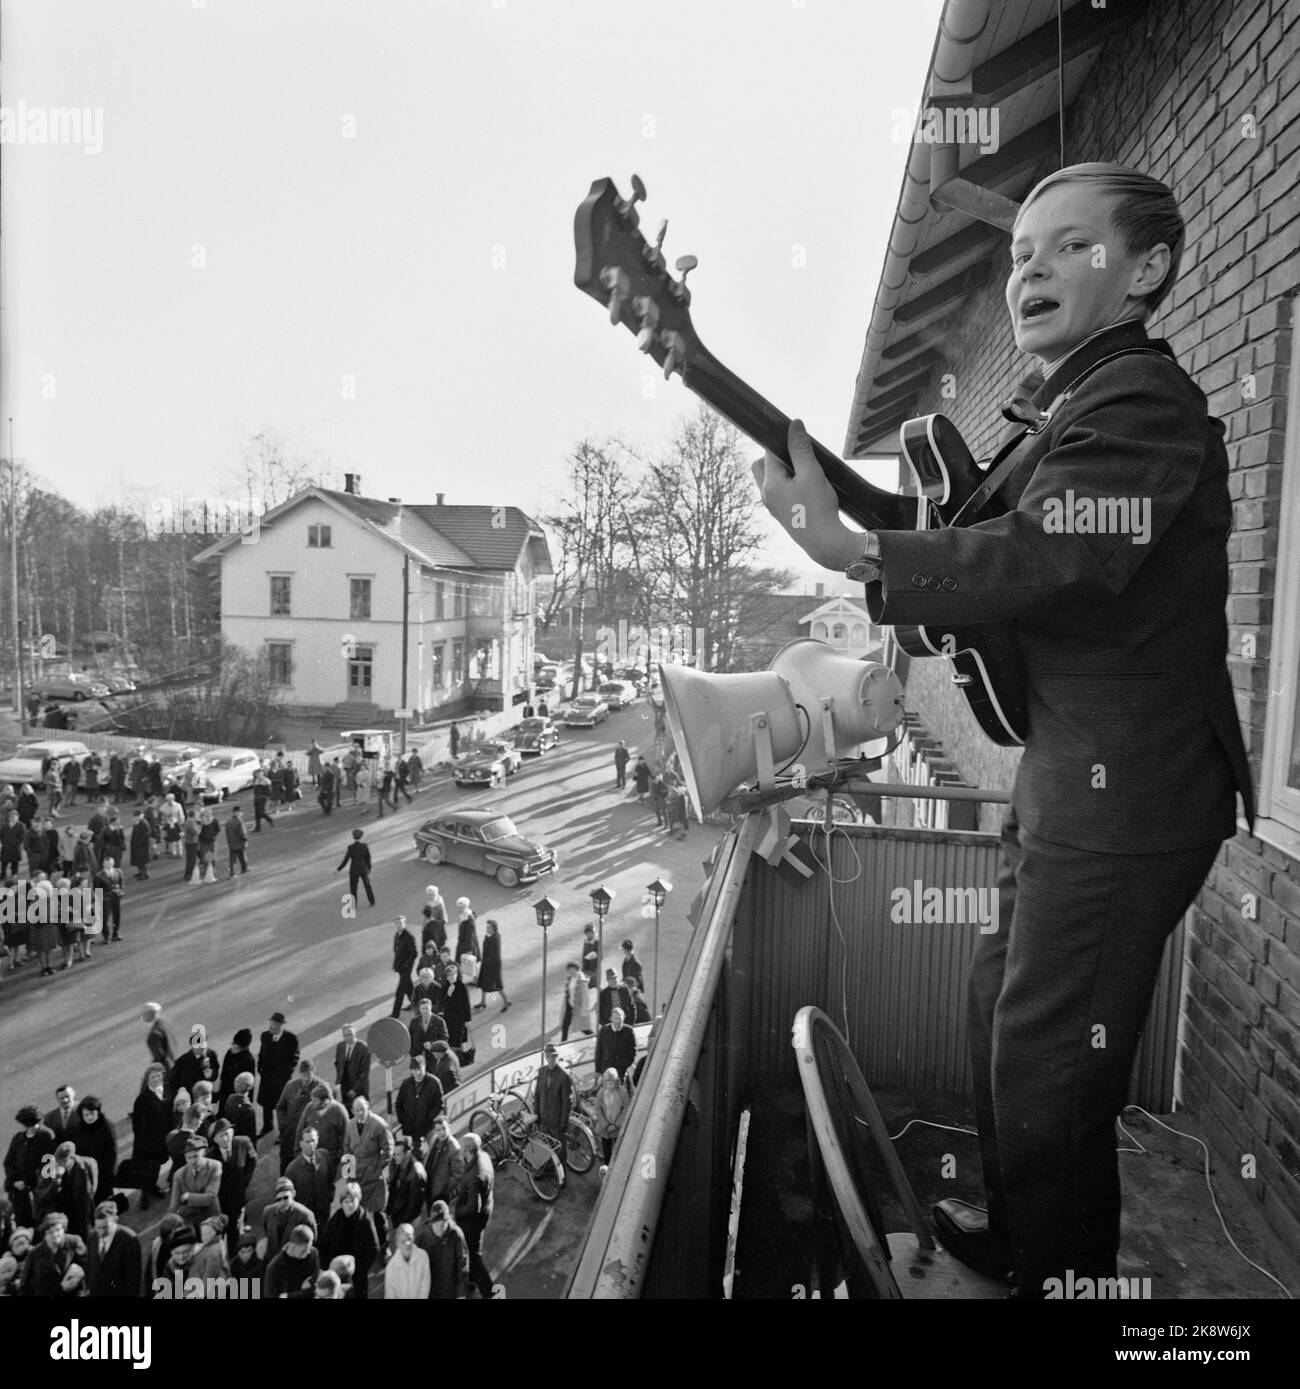 Magnor Oktober 1965: Bargelfolg für norwegische Margarine Allerheiligen kamen fast zehntausend verpackte Autos aus Schweden nach Magnor, um subventionierte norwegische Lebensmittel wie Zucker, Margarine und Weizenmehl zu handeln. Die überwiegende Mehrheit war im Kaufhaus für den 'Margarine King' per Løken. Hier setzt sich der 12-jährige Johnny Skoog mit Gitarre und Gesang auf, auf einem Stockstuhl auf dem Zwiebelbalkon stehend. Foto: Aage Storløkken / Aktuell / NTB Stockfoto